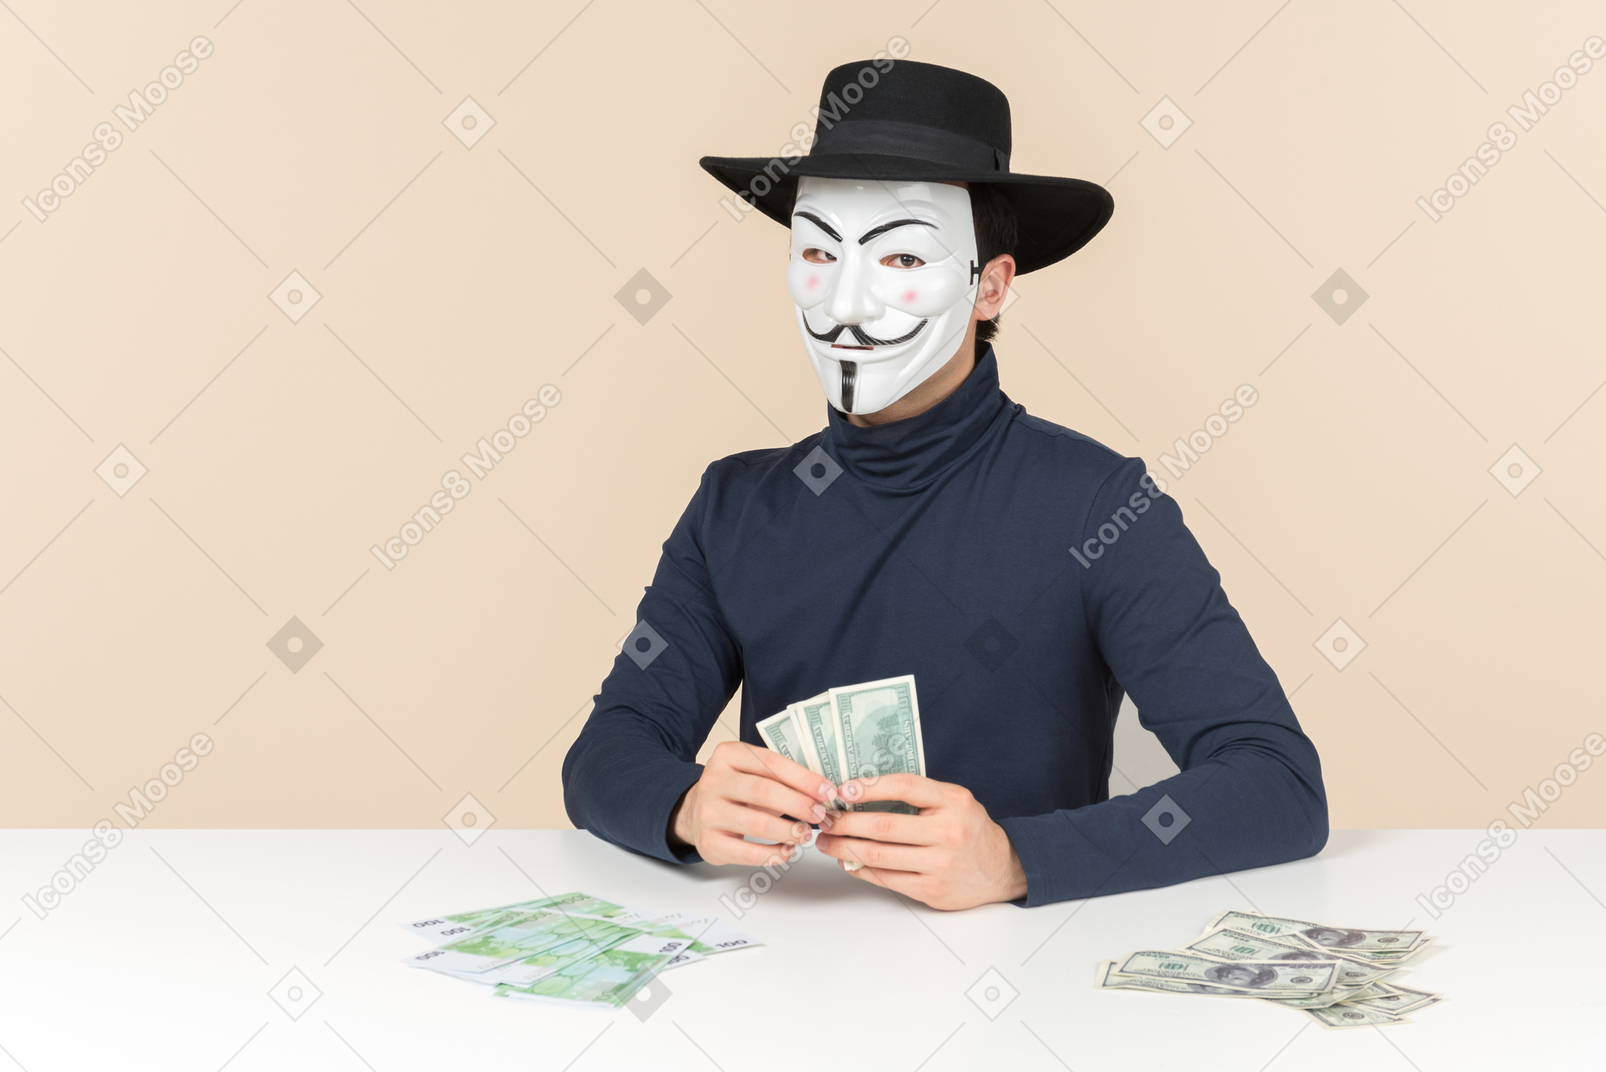 Хакер в маске вендетты сидит за столом и считает деньги